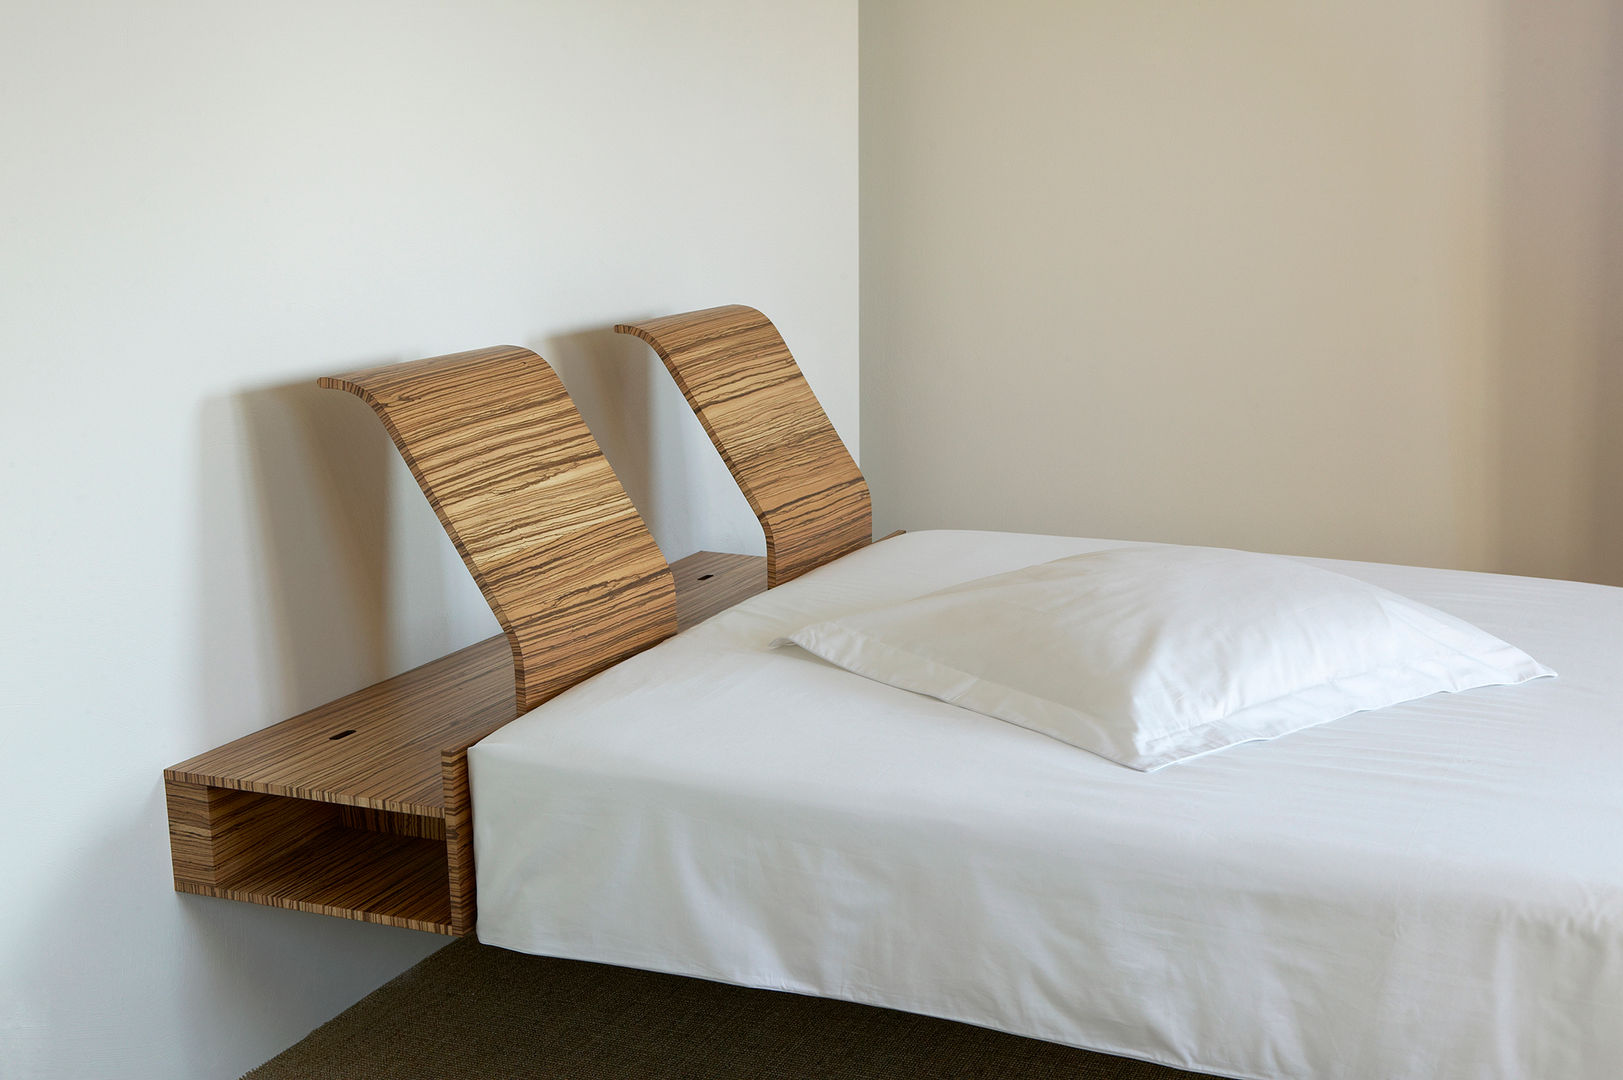 Work, meubelmakerij mertens meubelmakerij mertens Modern style bedroom Beds & headboards